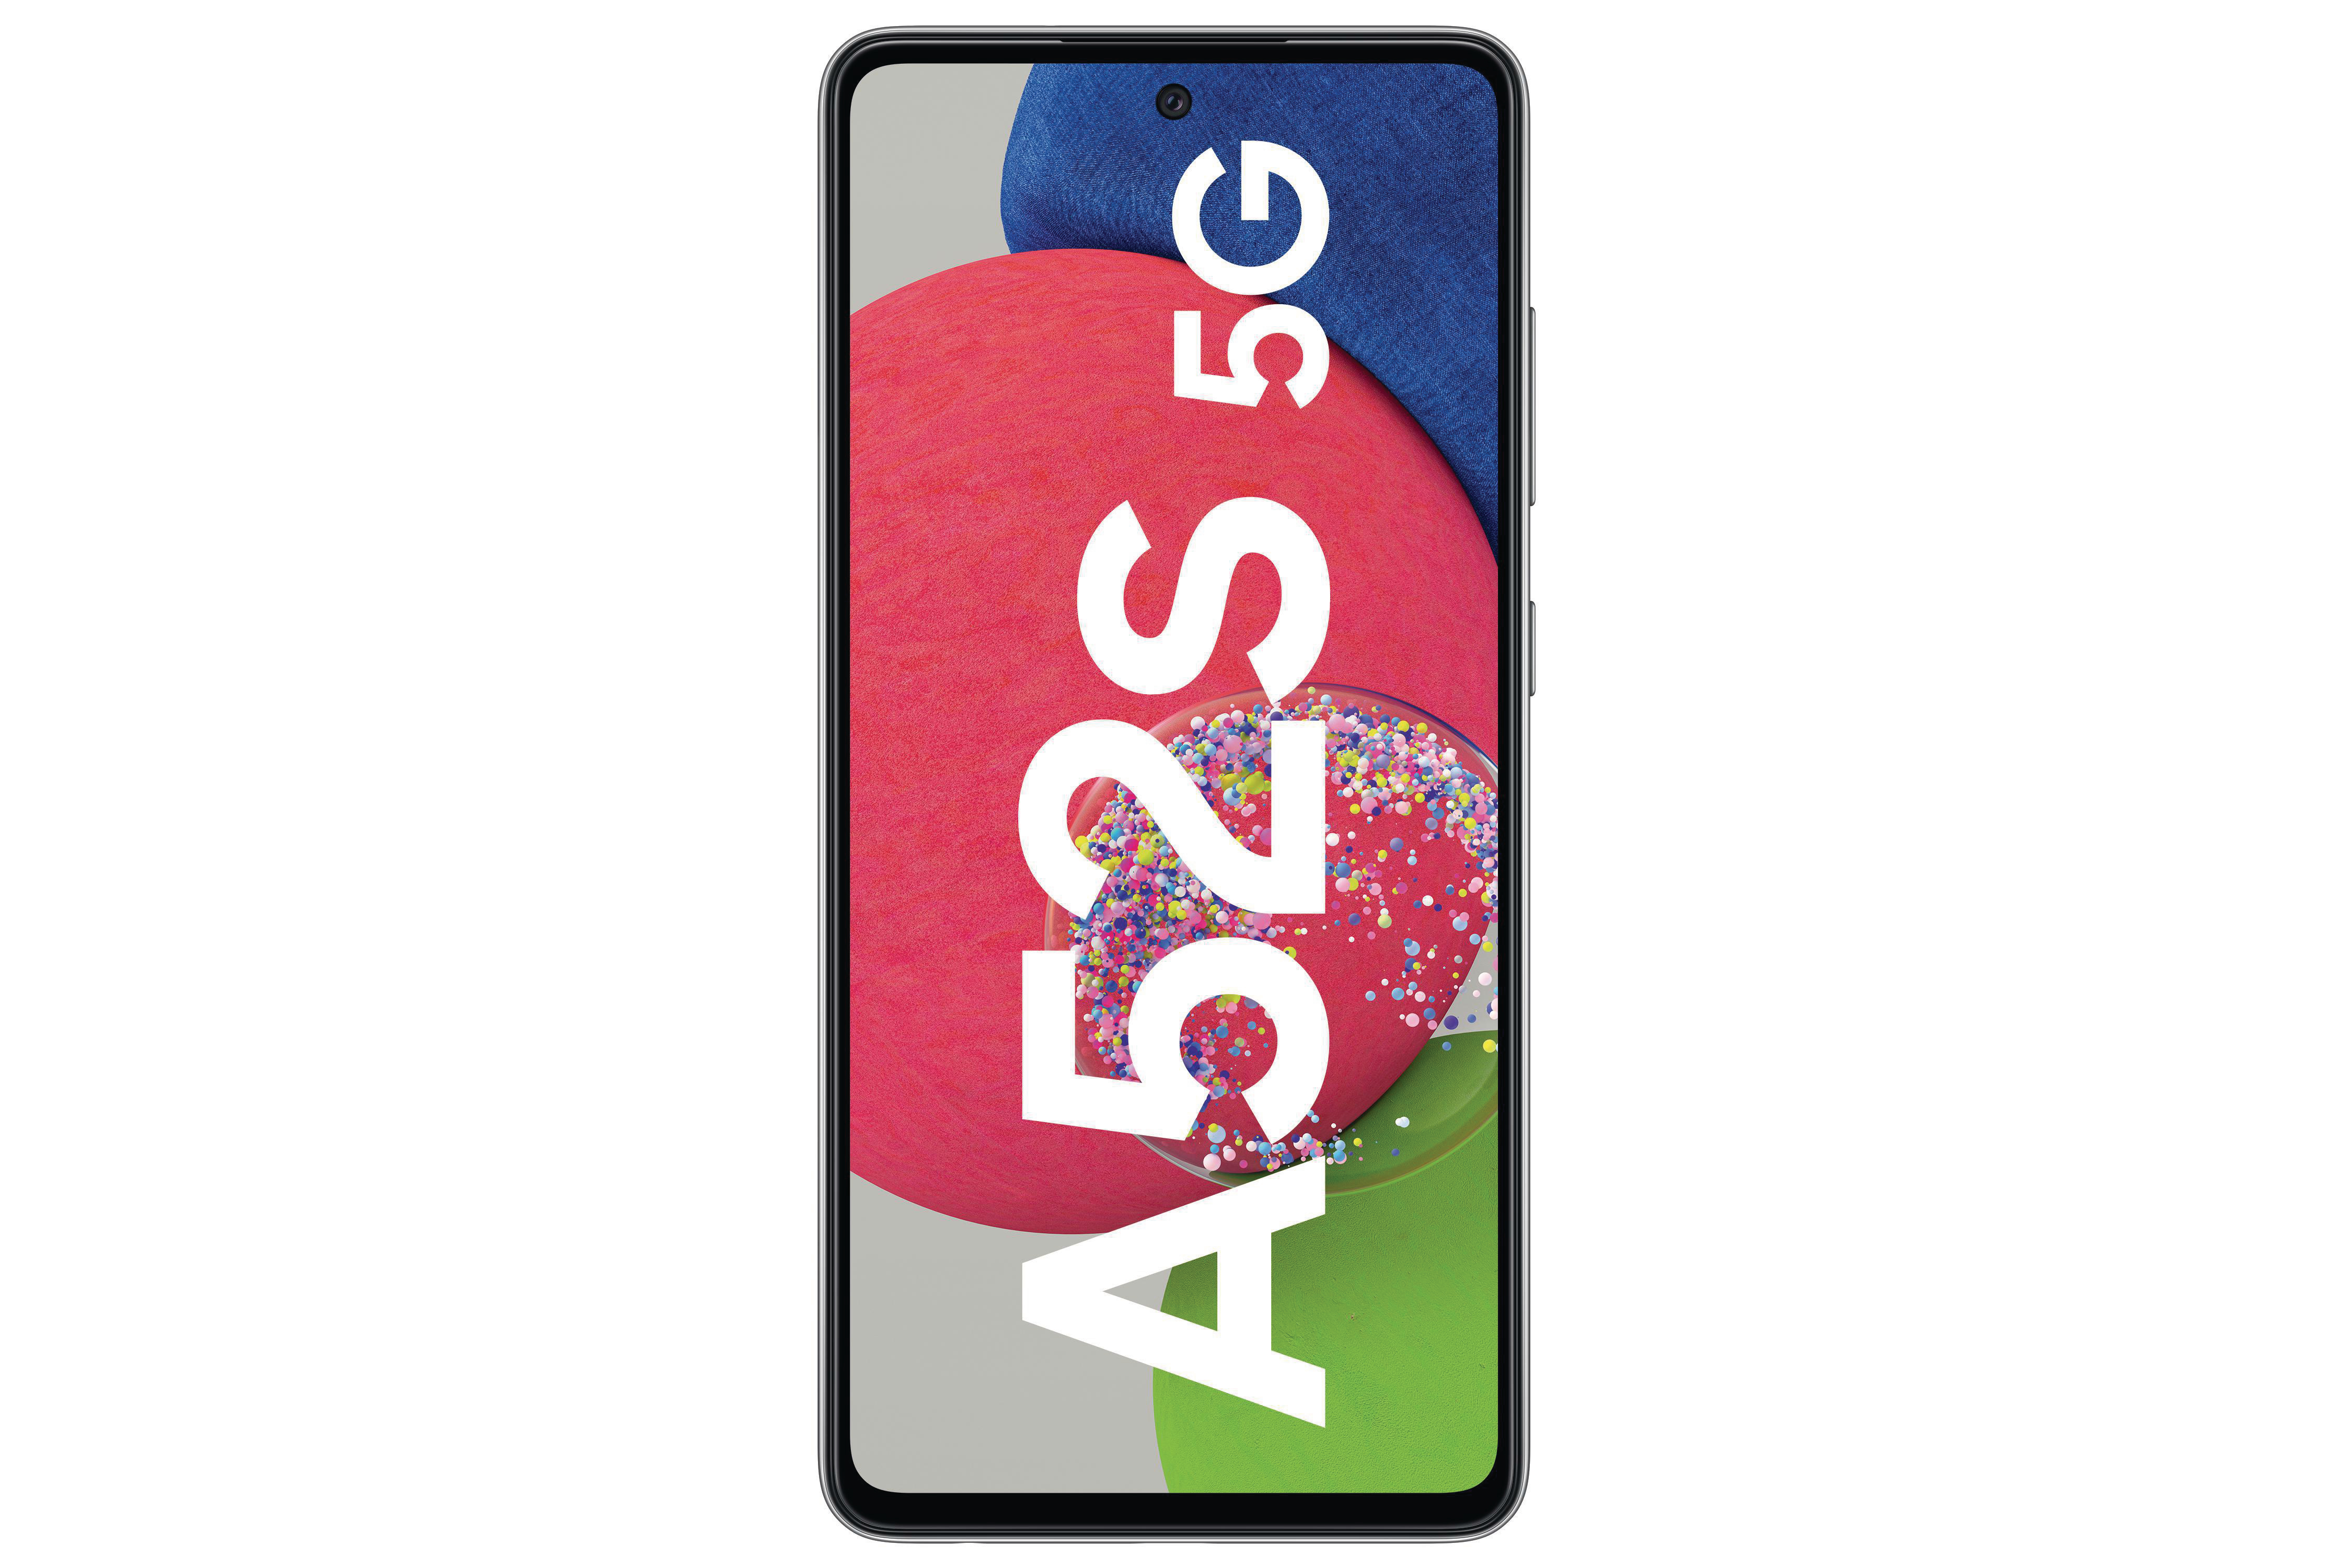 SAMSUNG Galaxy A52s 5G SIM Awesome Dual GB Black 256